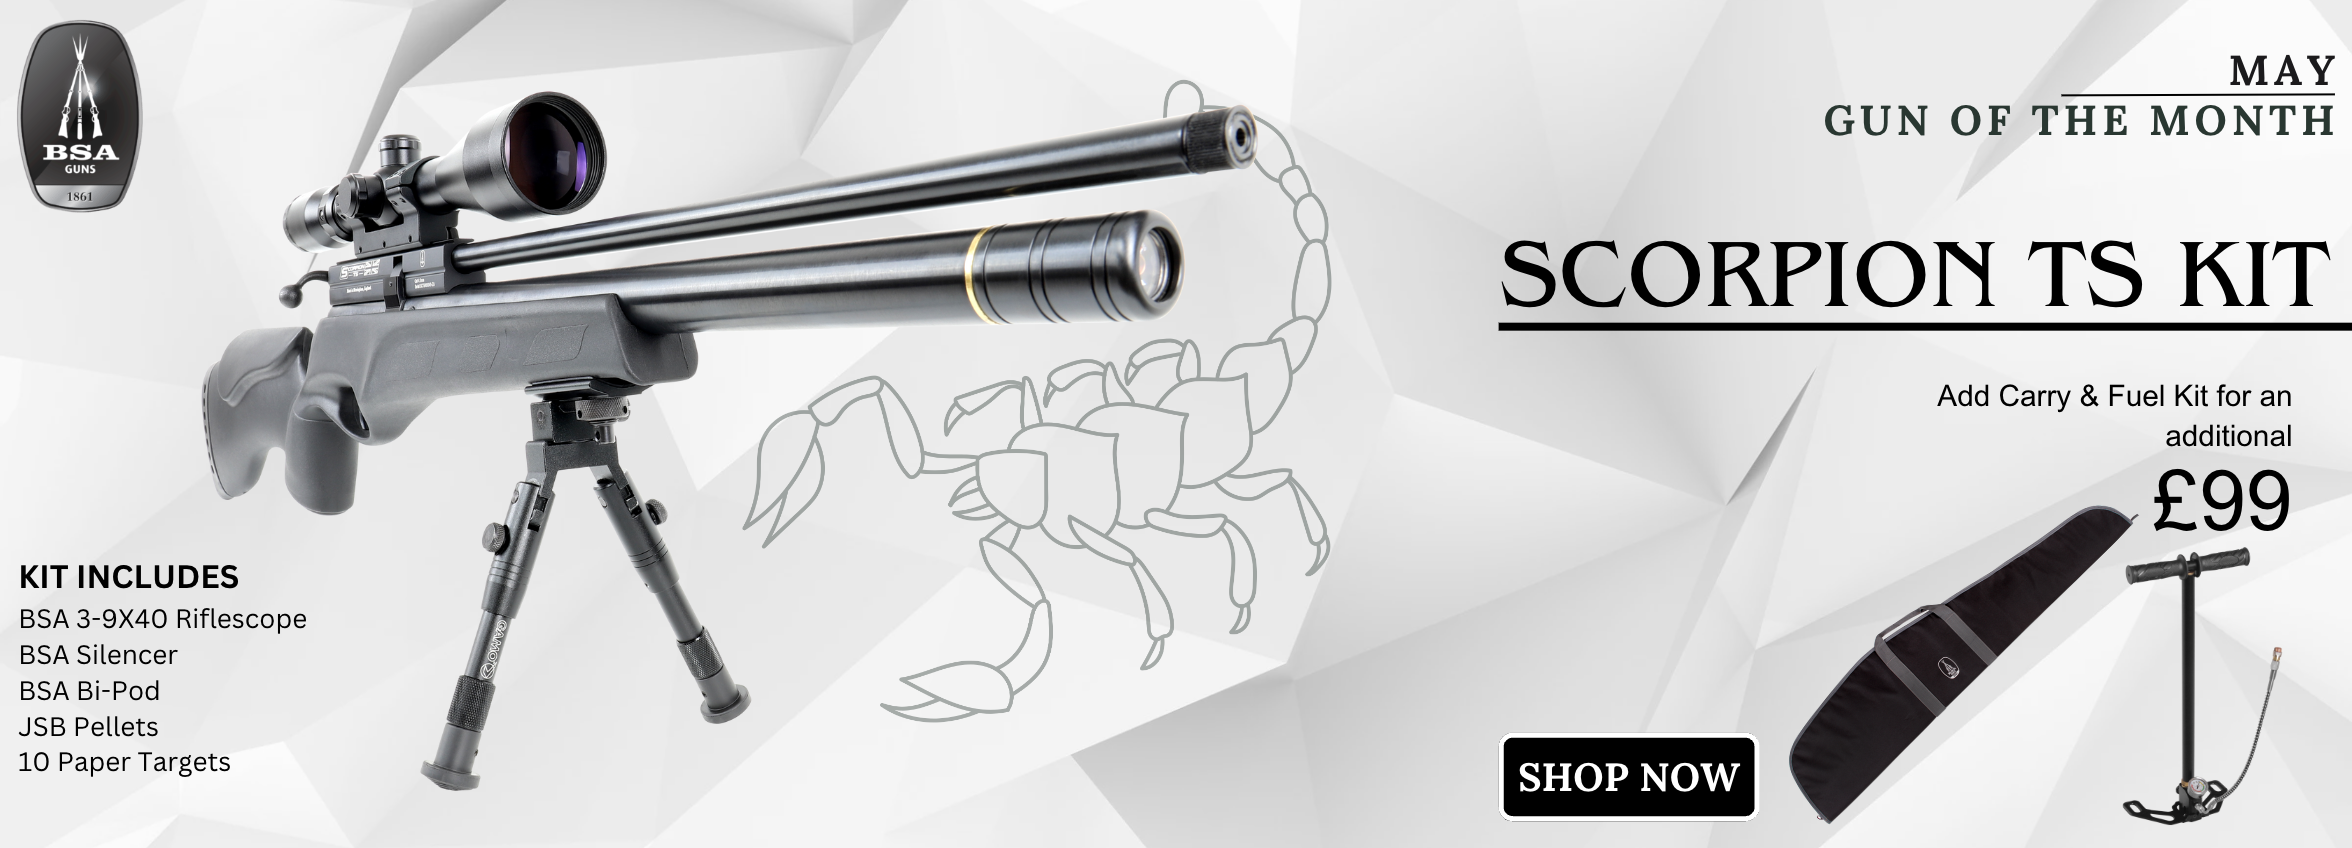 BSA Scorpion TS Air Rifle Kit - Gun Of The Month Deal